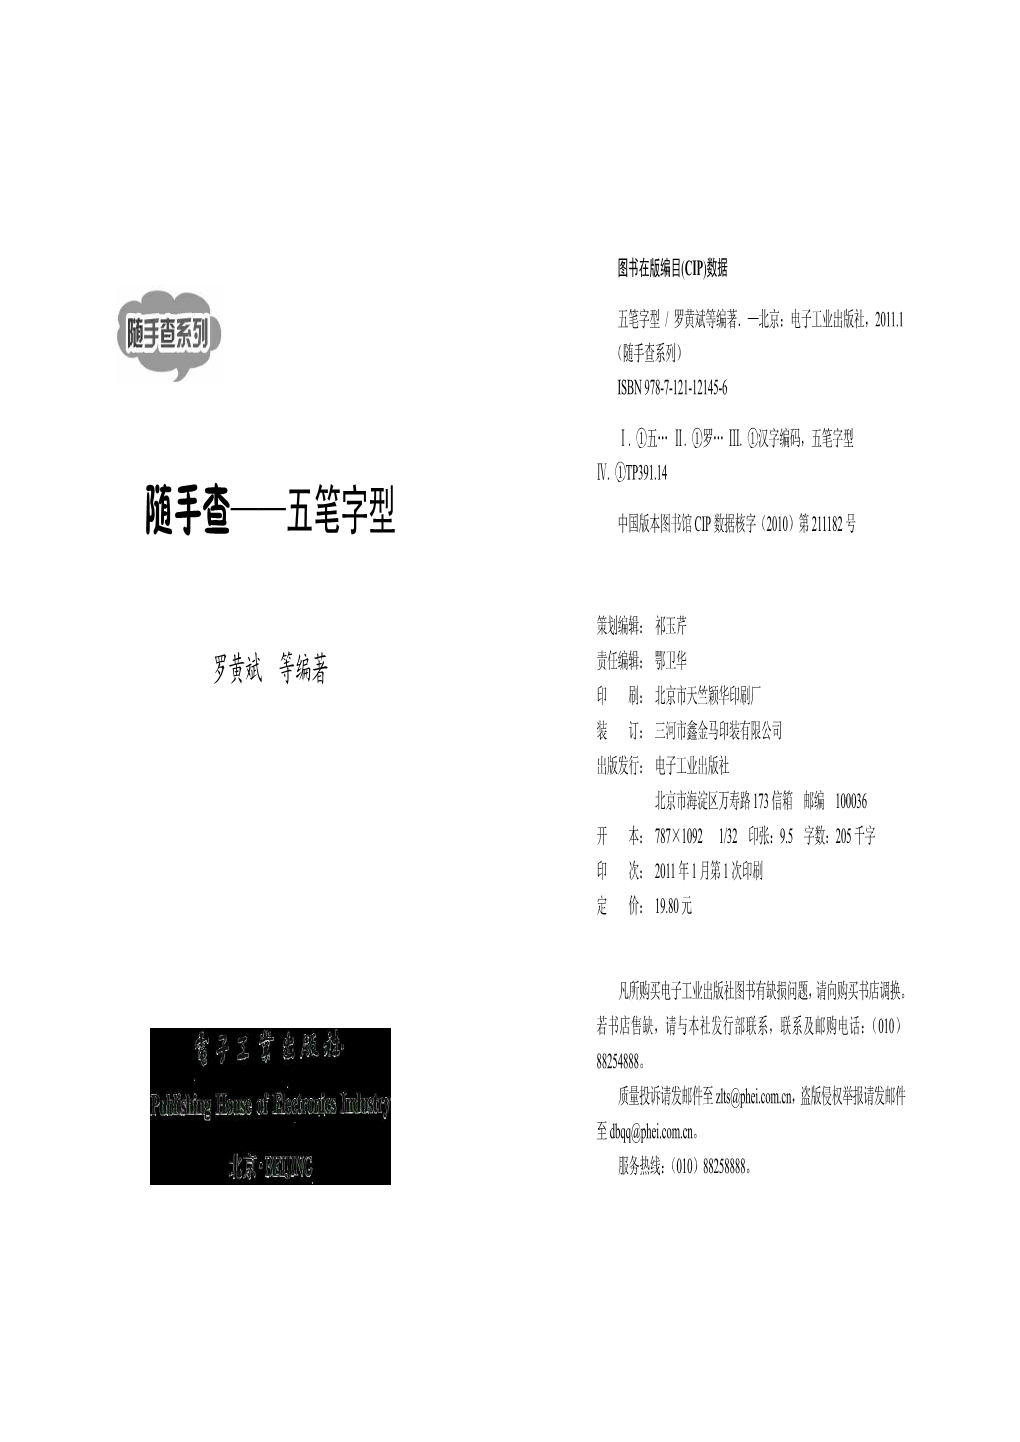 随手查——五笔字型 中国版本图书馆 Cip 数据核字（2010）第 211182 号